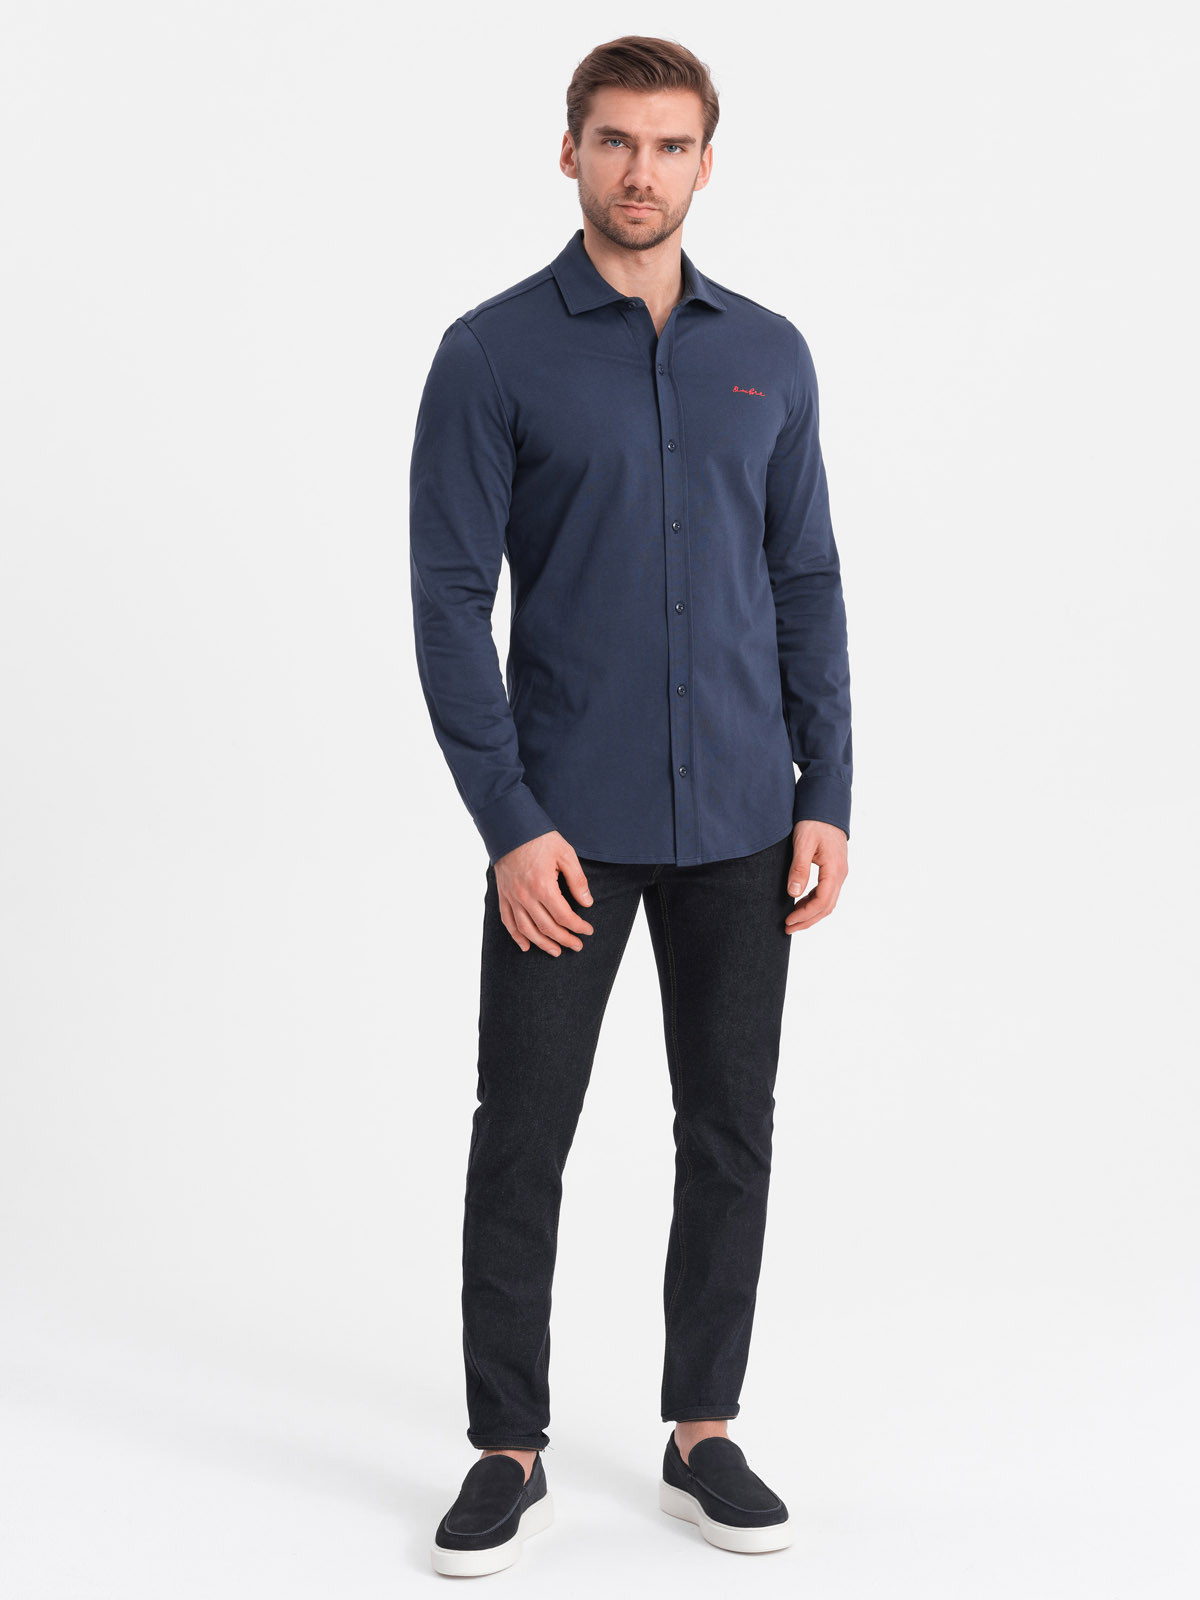 Ombre Men's REGULAR cotton single jersey knit shirt - navy blue